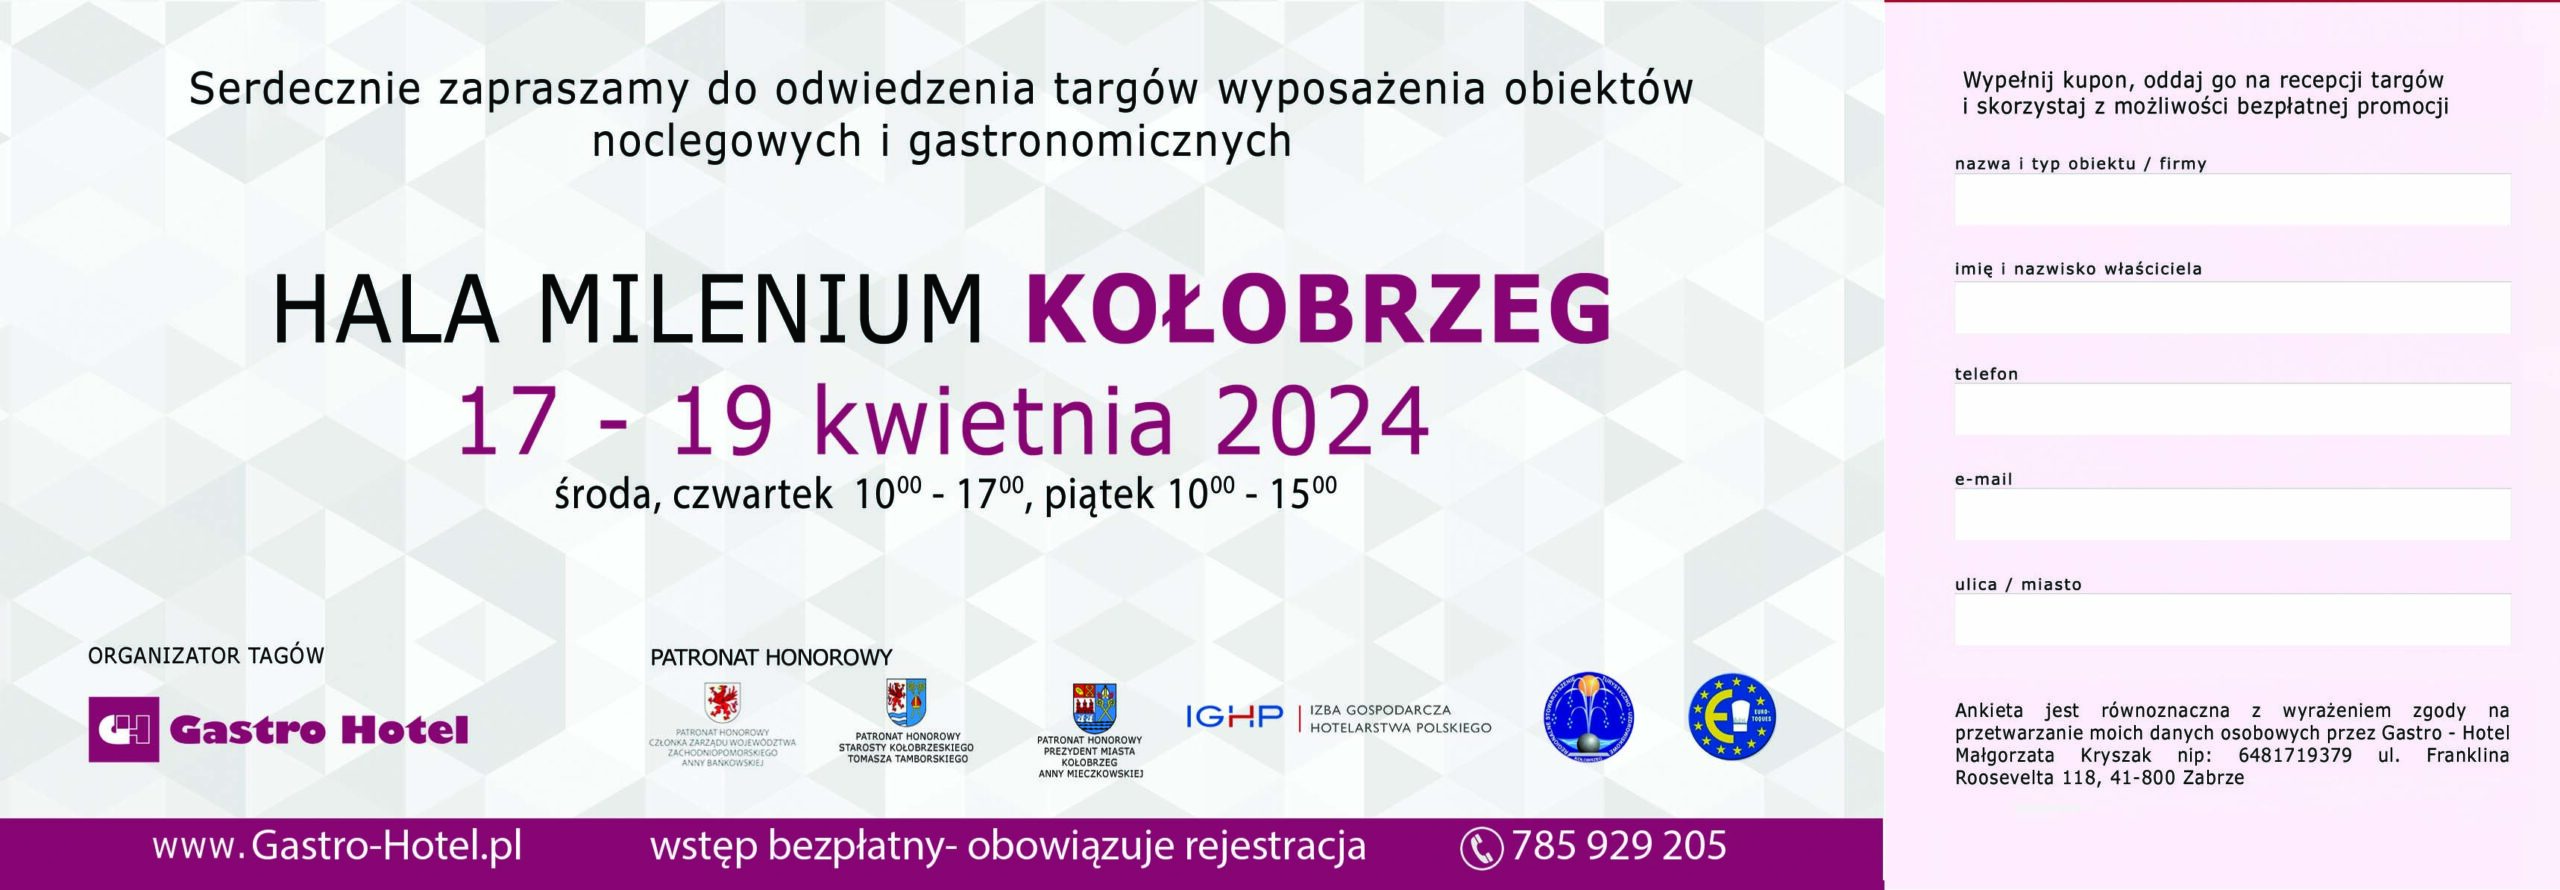 zaproszenie 17-19 kwietnia GASTRO-HOTEL Hala Milenium Kołobrzeg